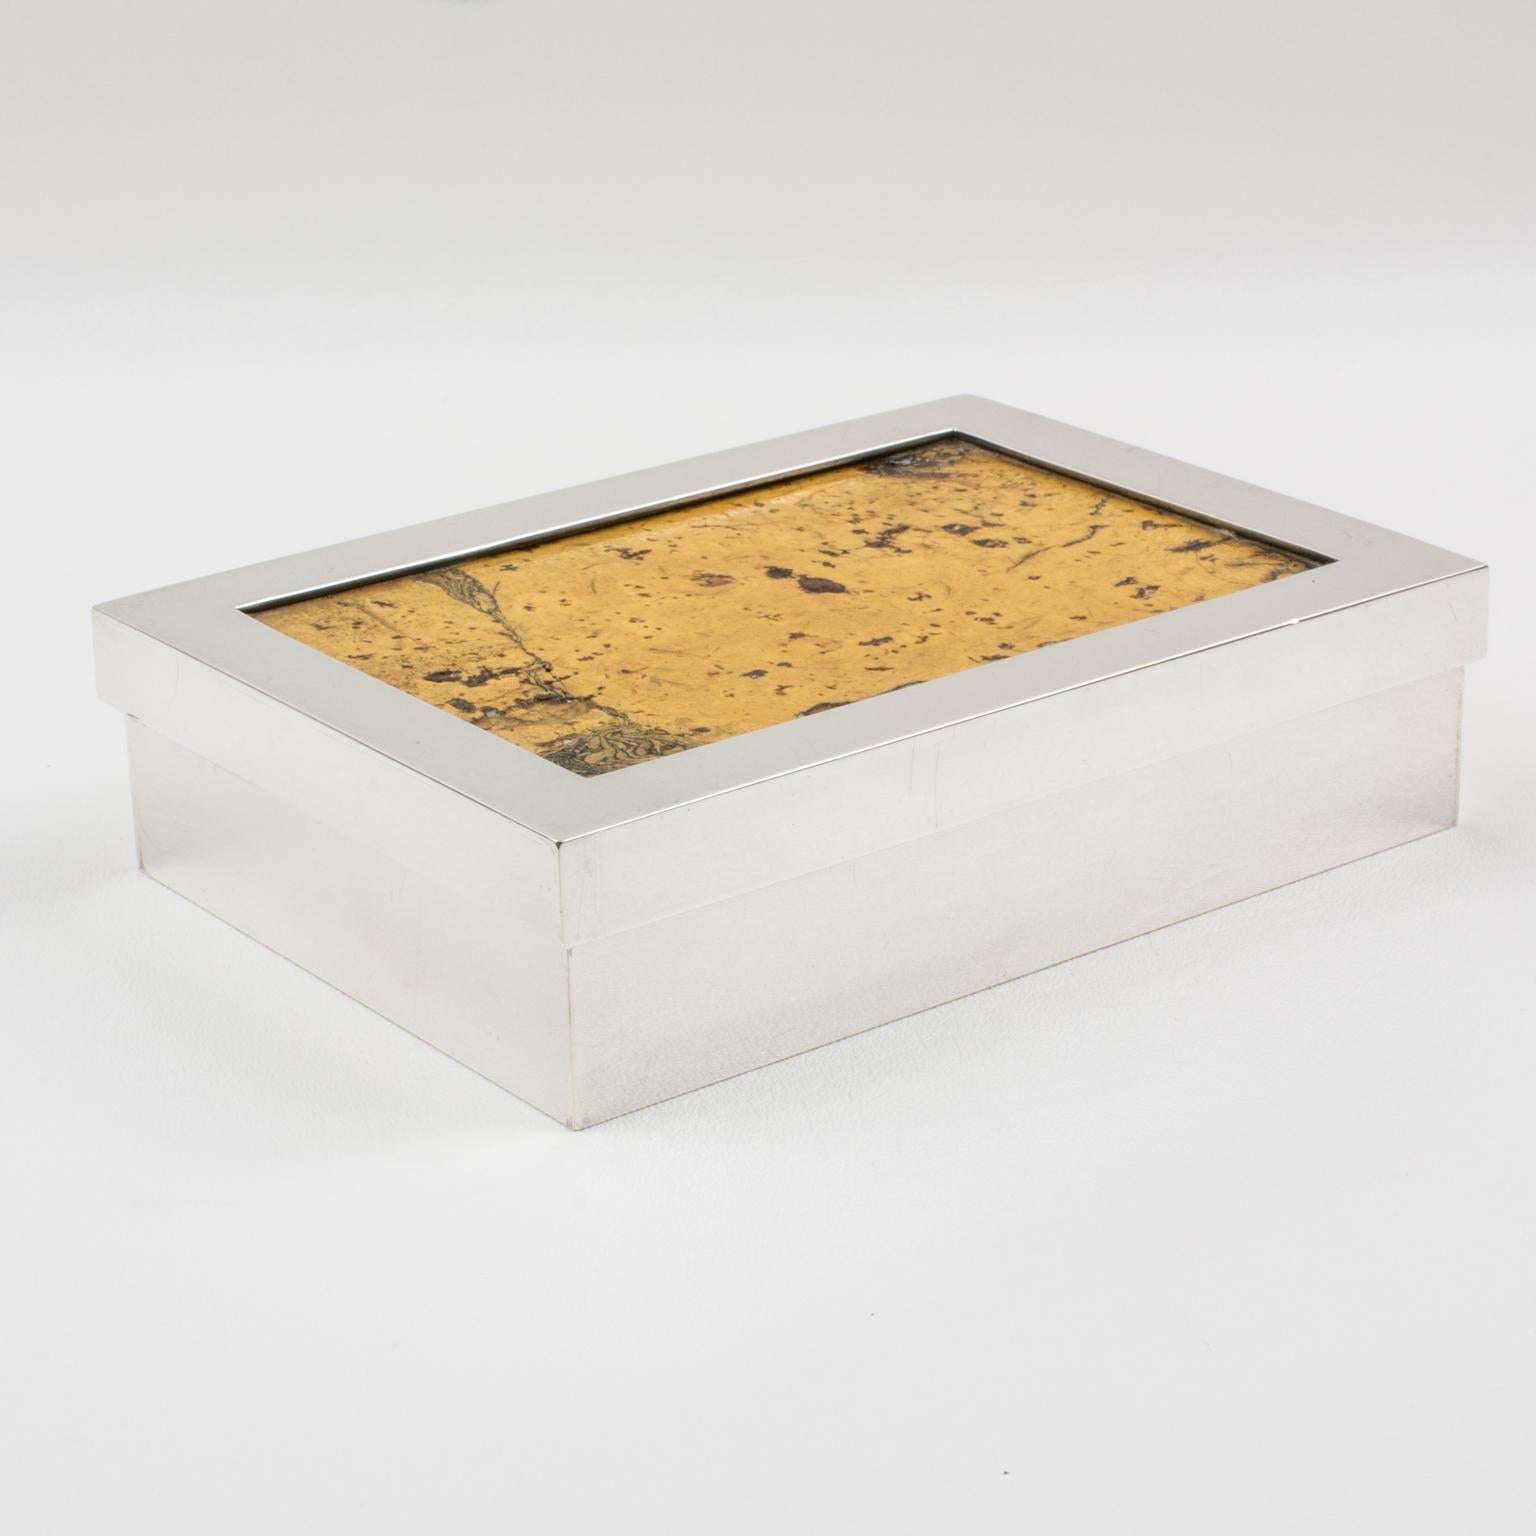 Debladis Paris Art Deco Silver Plate and Cork Decorative Box, 1940s For Sale 4